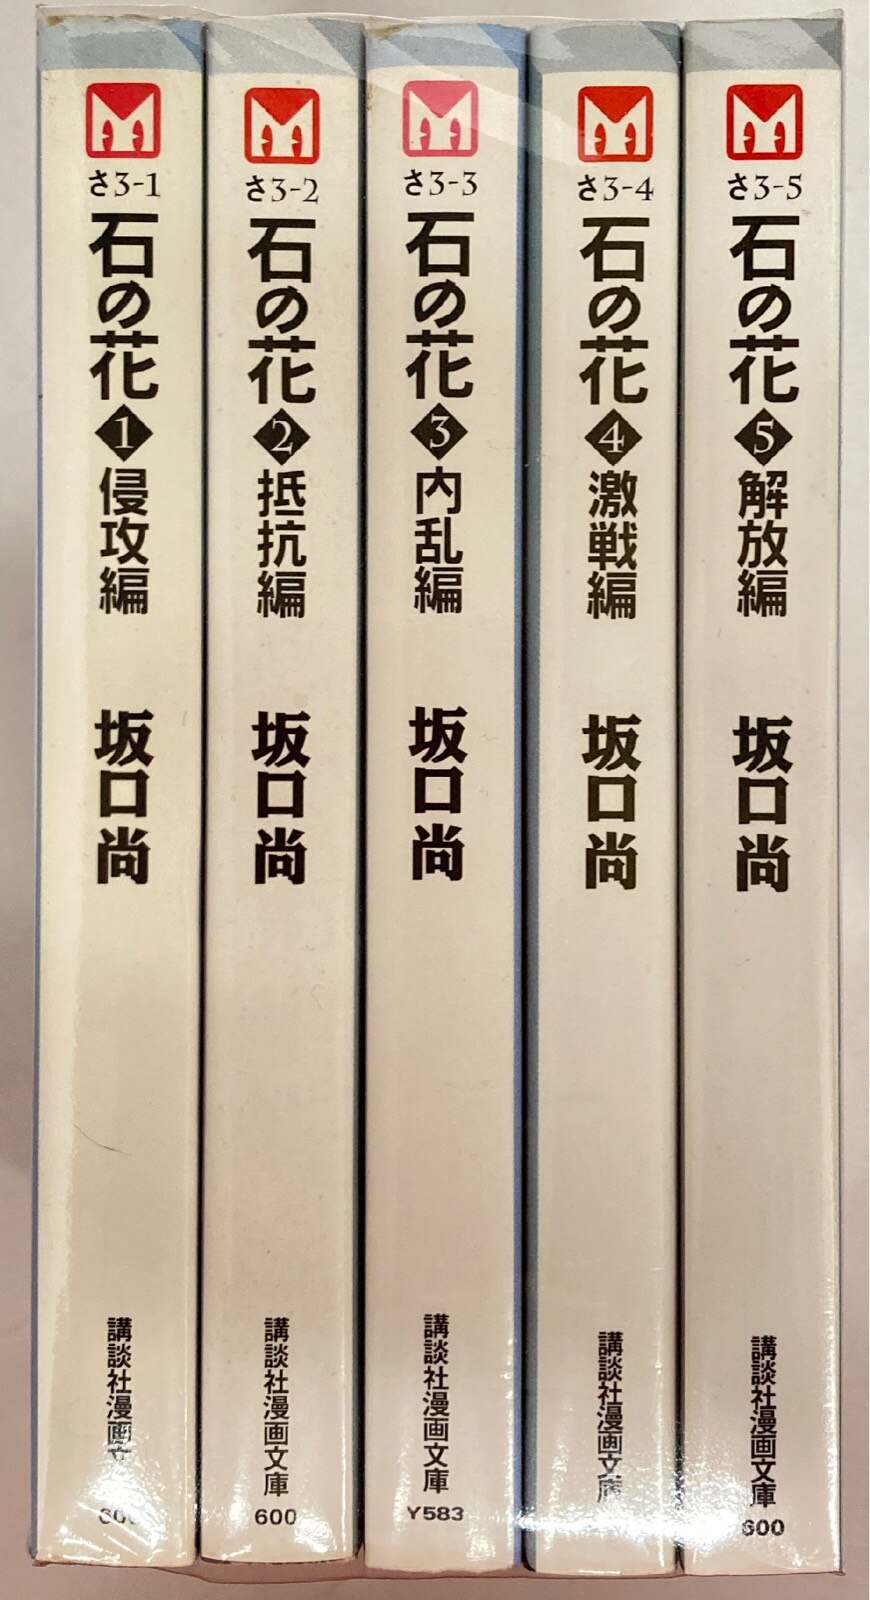 講談社 講談社漫画文庫 坂口尚 !!)石の花 文庫版 全5巻 セット